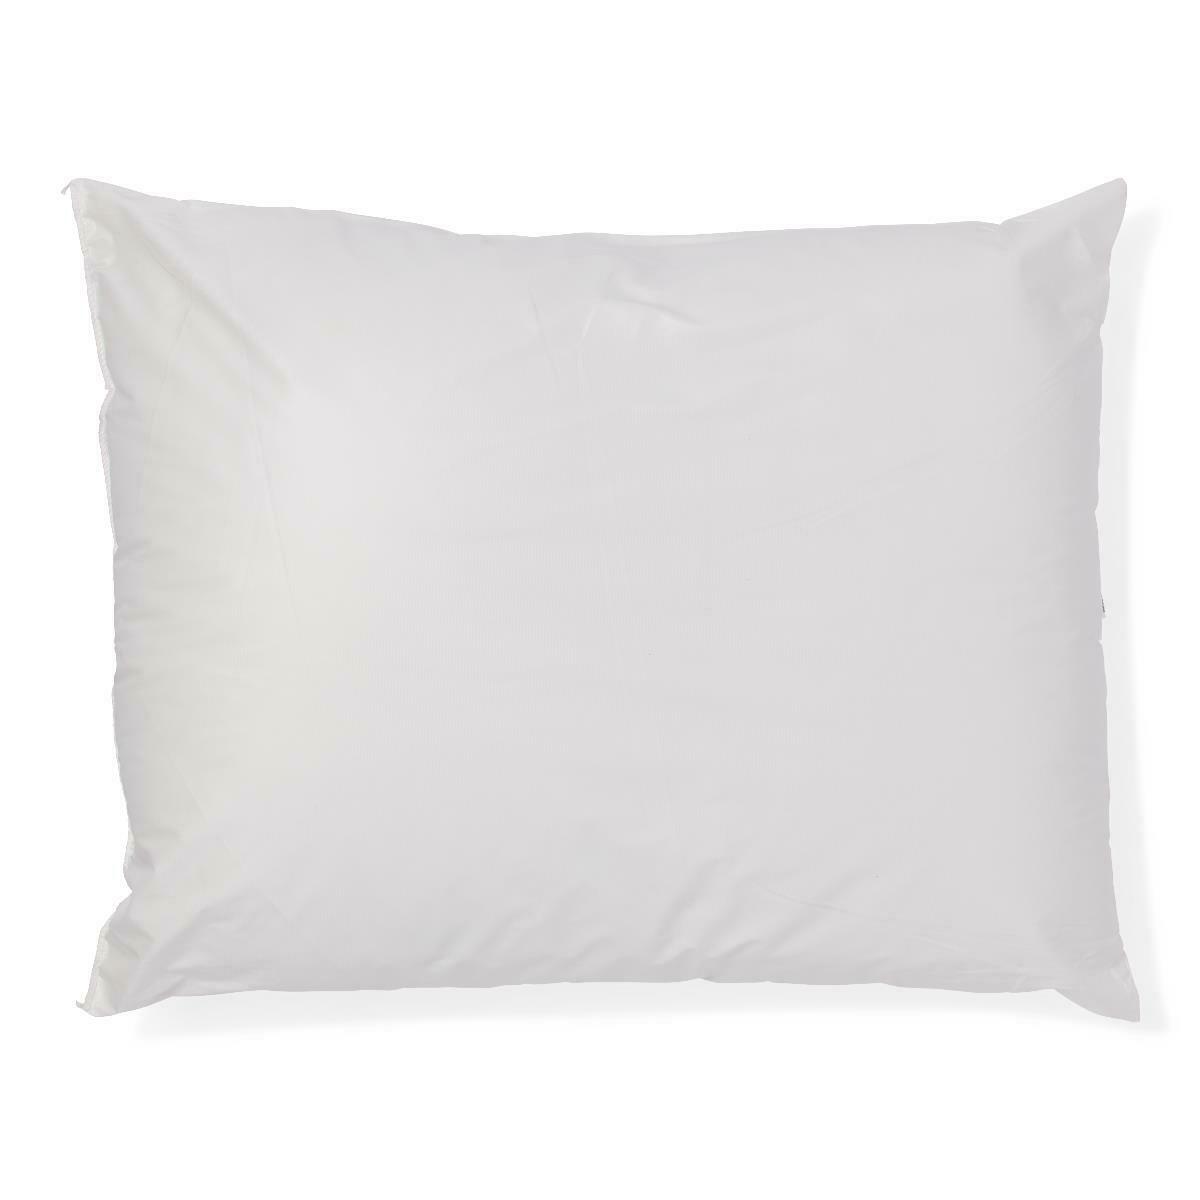 Medsoft Pillow, White, 20